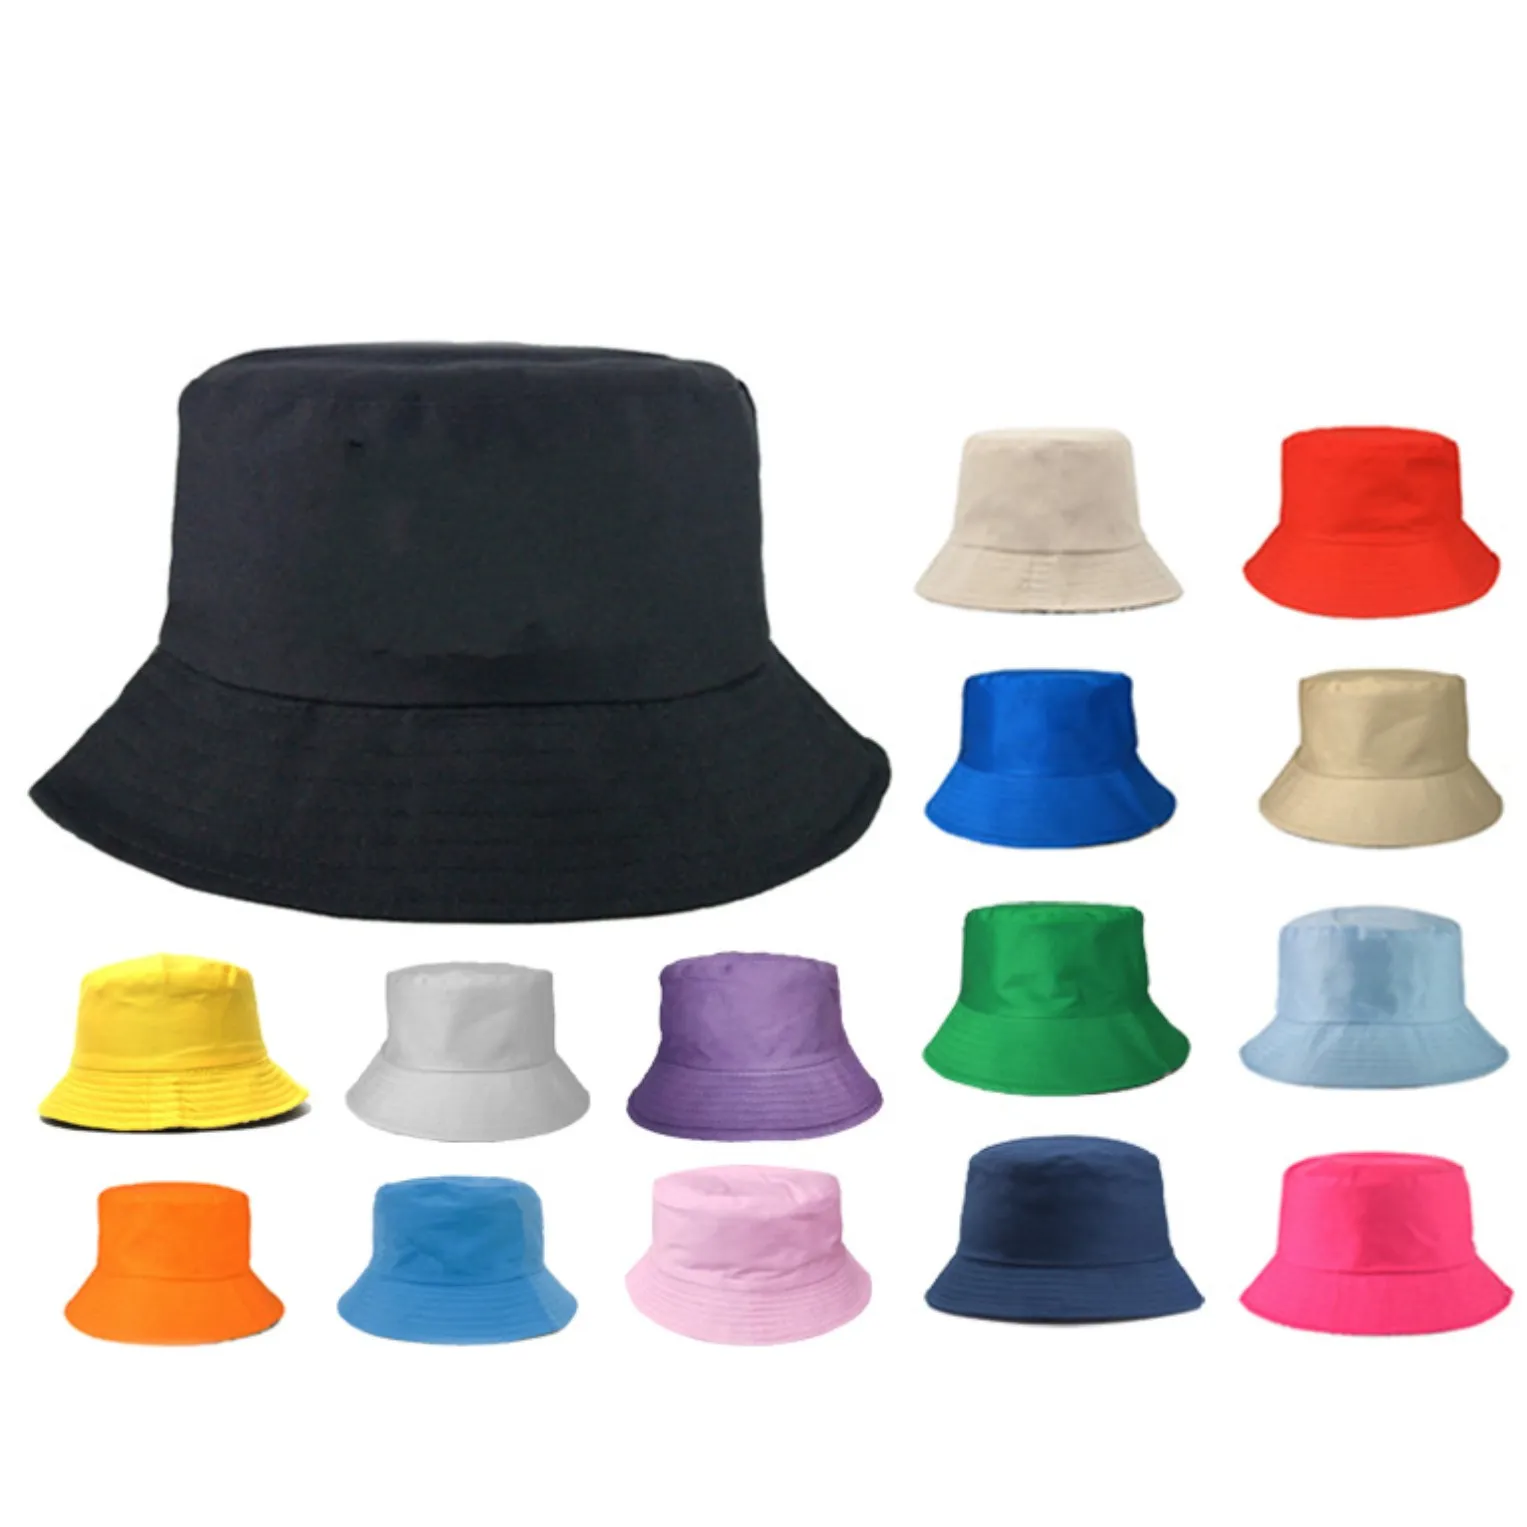 قبعات واسعة الحافة دلو القبعات الأطفال البالغين دلو القبعة قبعة القطن القبعات الصيد بوي فتاة الصياد صنه